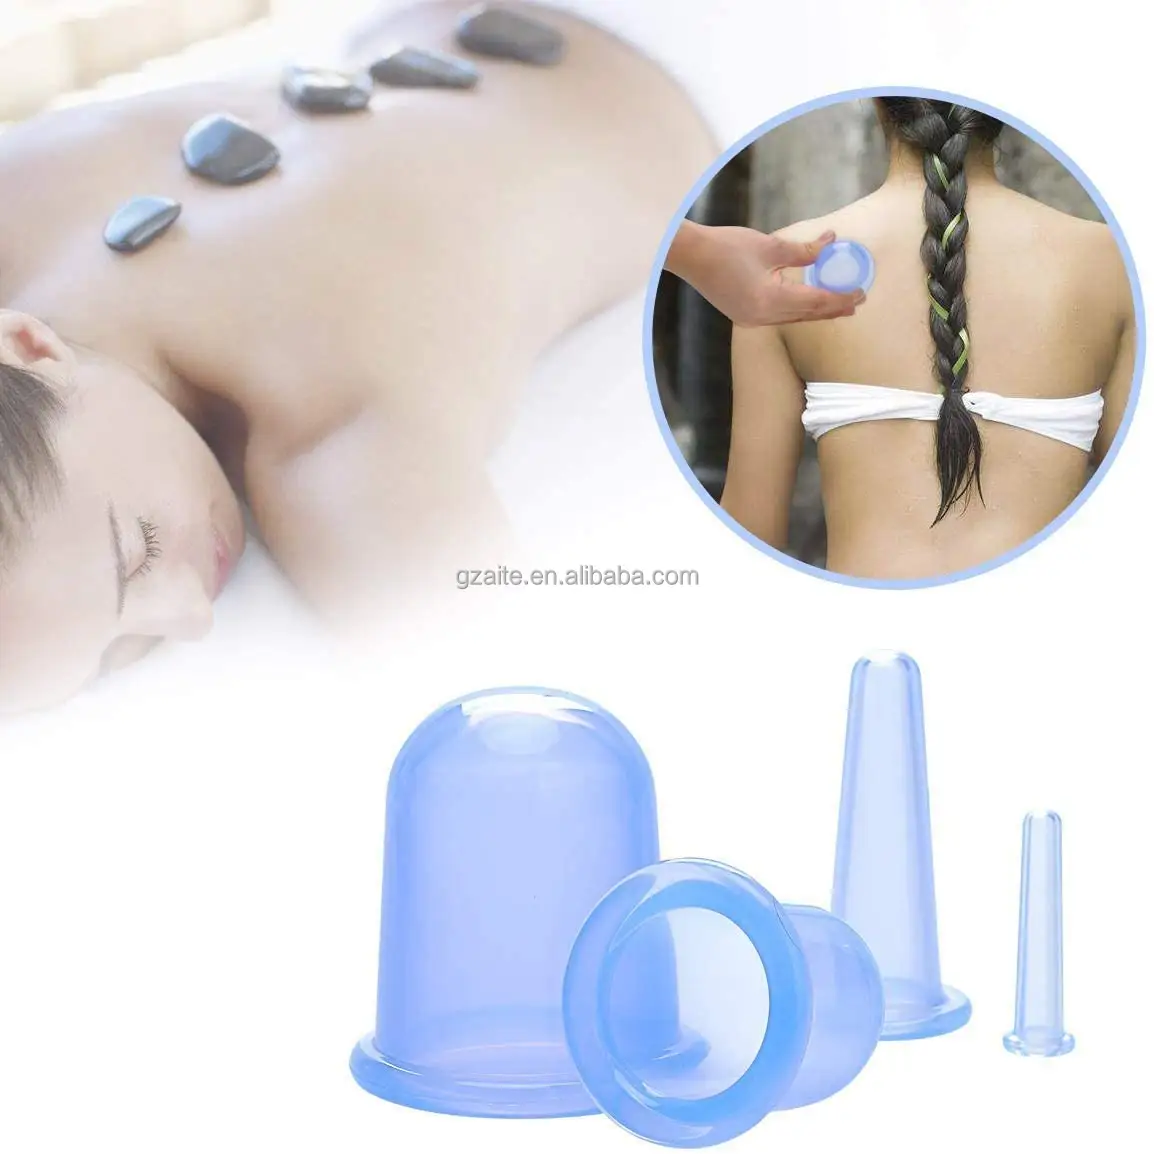 Geruchsloses Silikon-Premium-Qualitäts-Massagegerät starke saugnapfchen Schröpfen